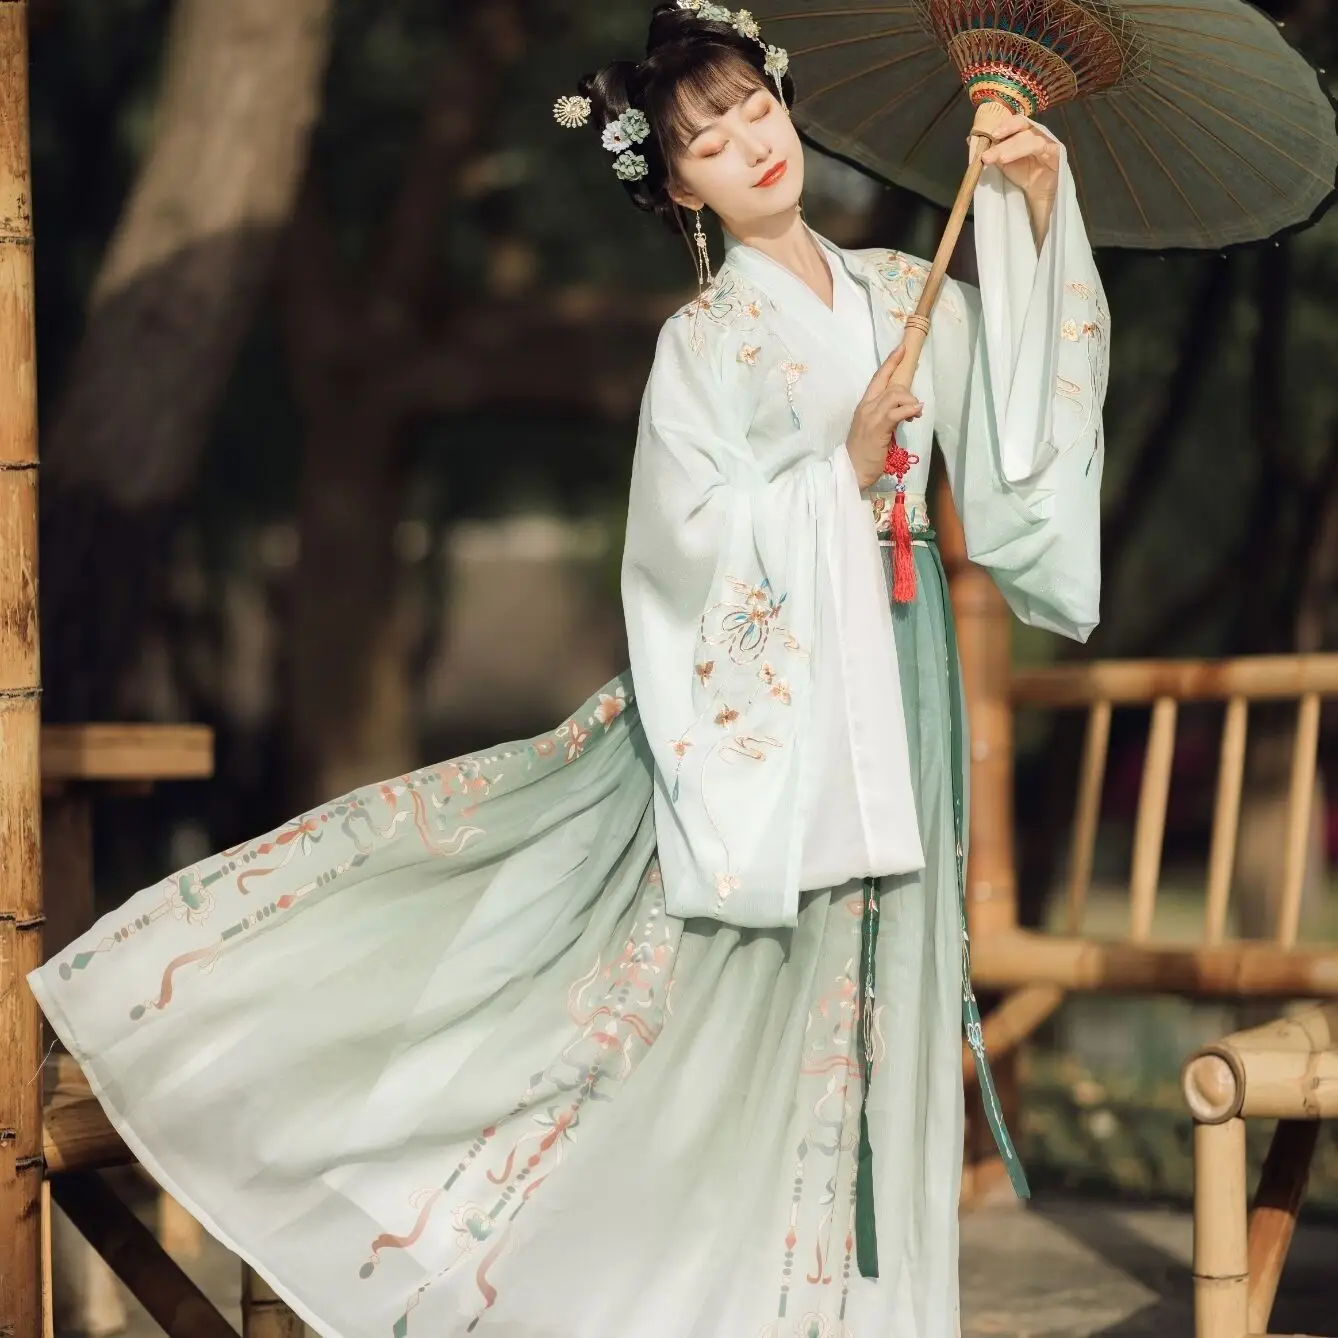 GODVC Traditionnelle Chinoise Vêtements Femmes Hanfu Robe Fée Ancienne Dynastie Han Princesse scène Nationale de Danse Folklorique Festival de la Tenue Couleur : Color1, Size : S 